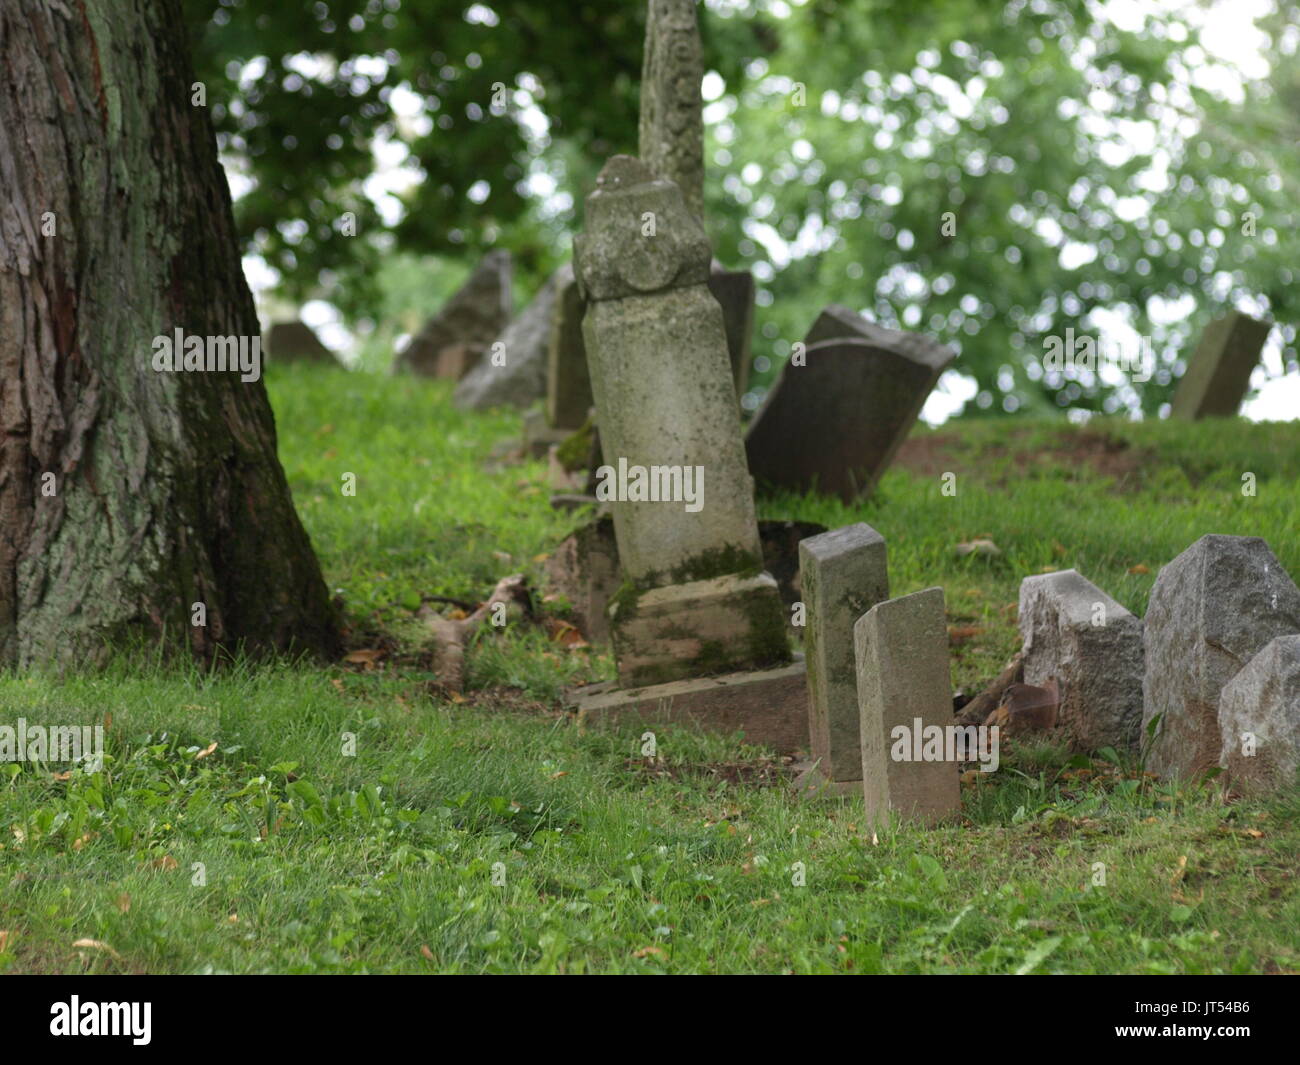 Ältere verschlissene Grabsteine von Baumwurzeln umgeworfen, keine Namen angezeigt. Stockfoto